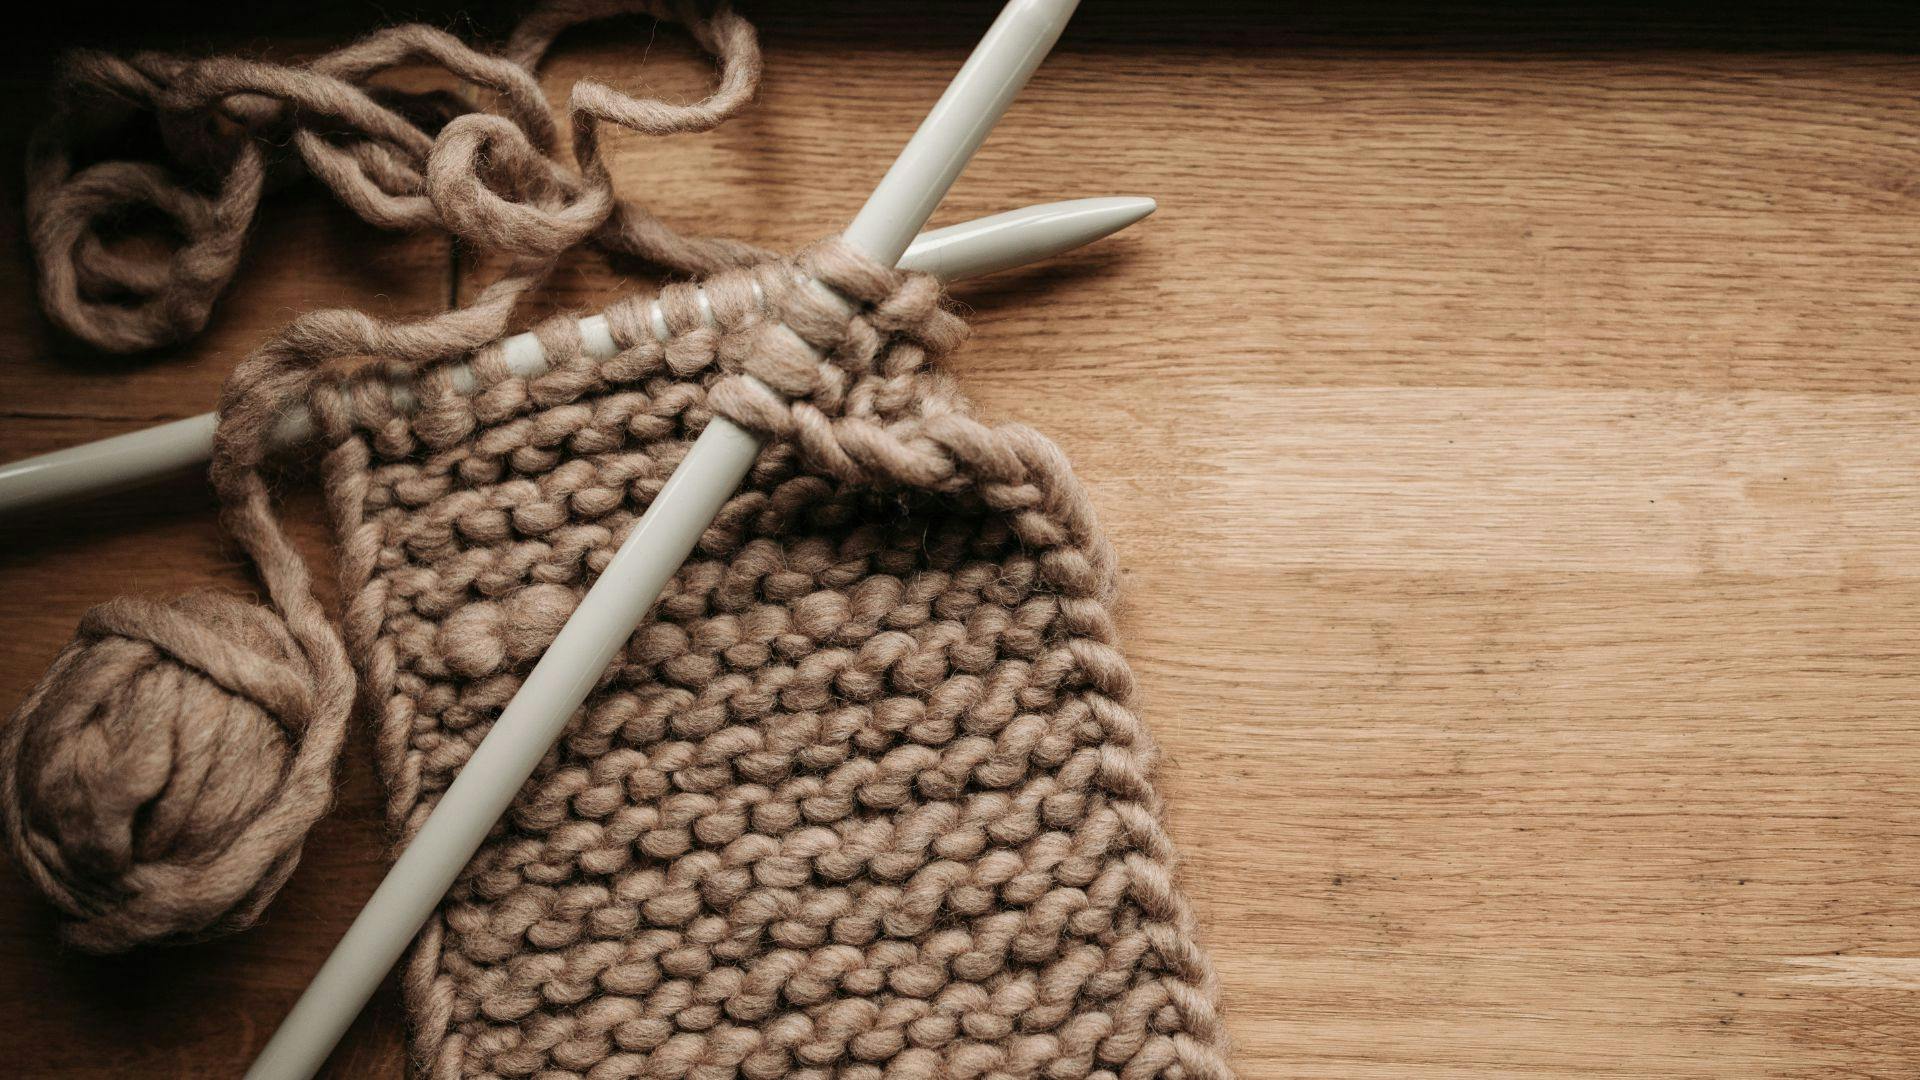 How to knit a scarf - Hướng dẫn đan khăn quàng cổ cực đơn giản